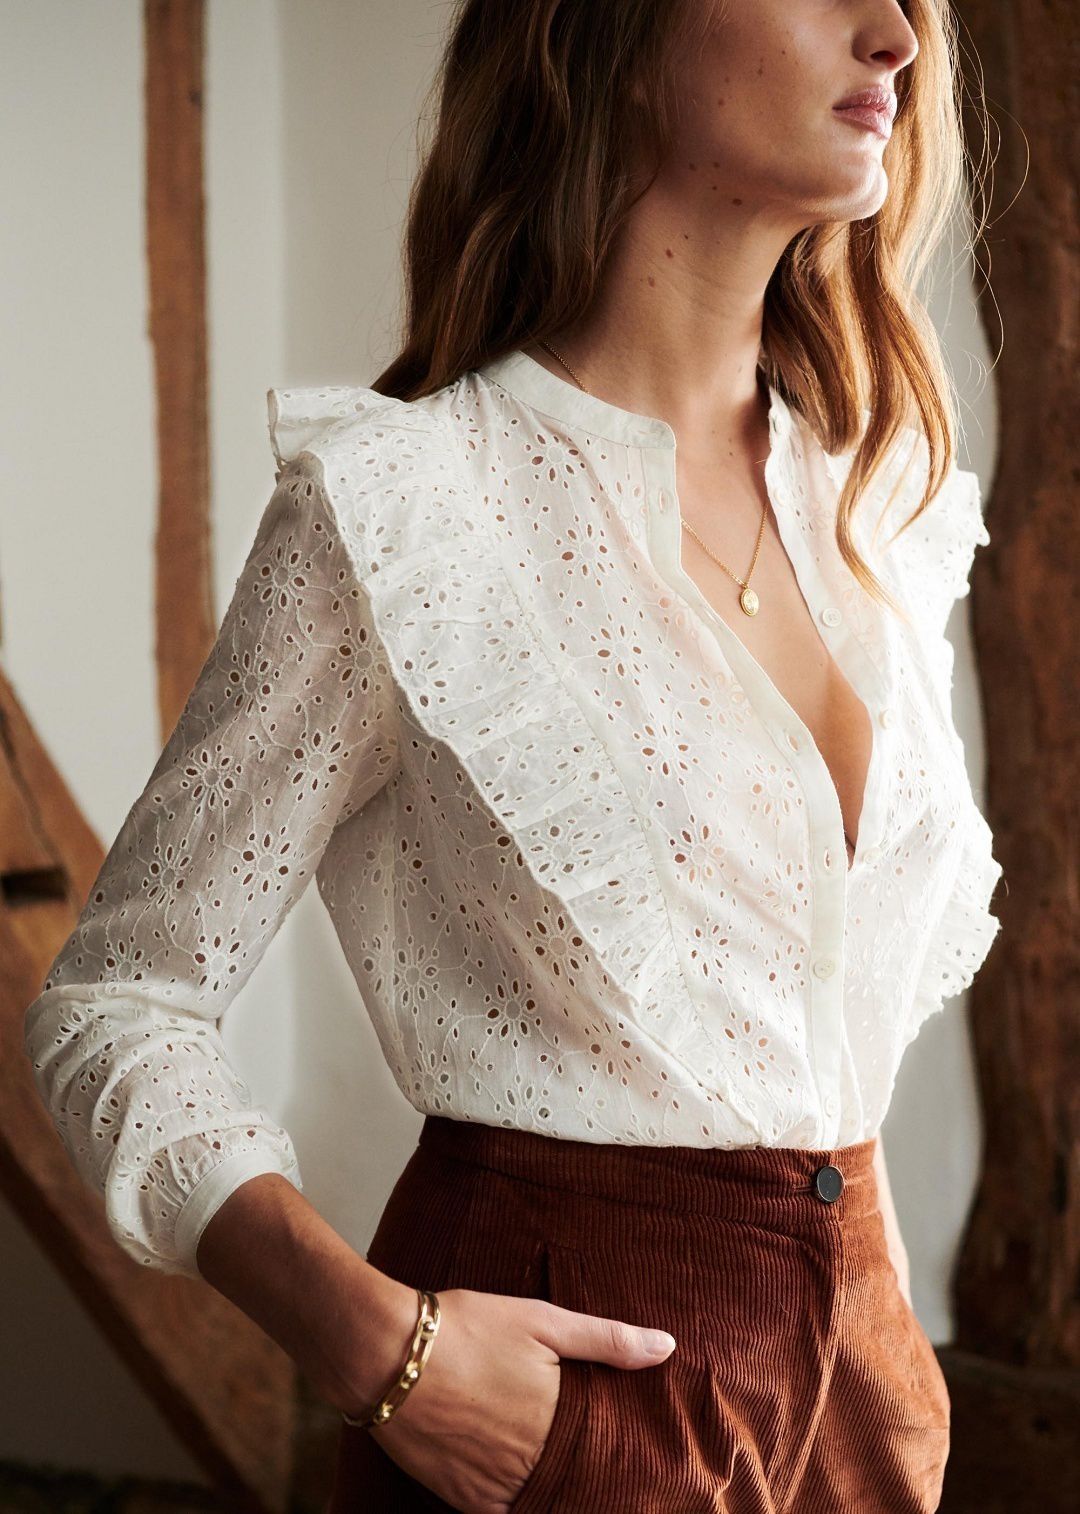 Елегантні білі блузки, які неодмінно захочеться додати в свій гардероб. Блуза є невід'ємною частиною жіночого гардероба.